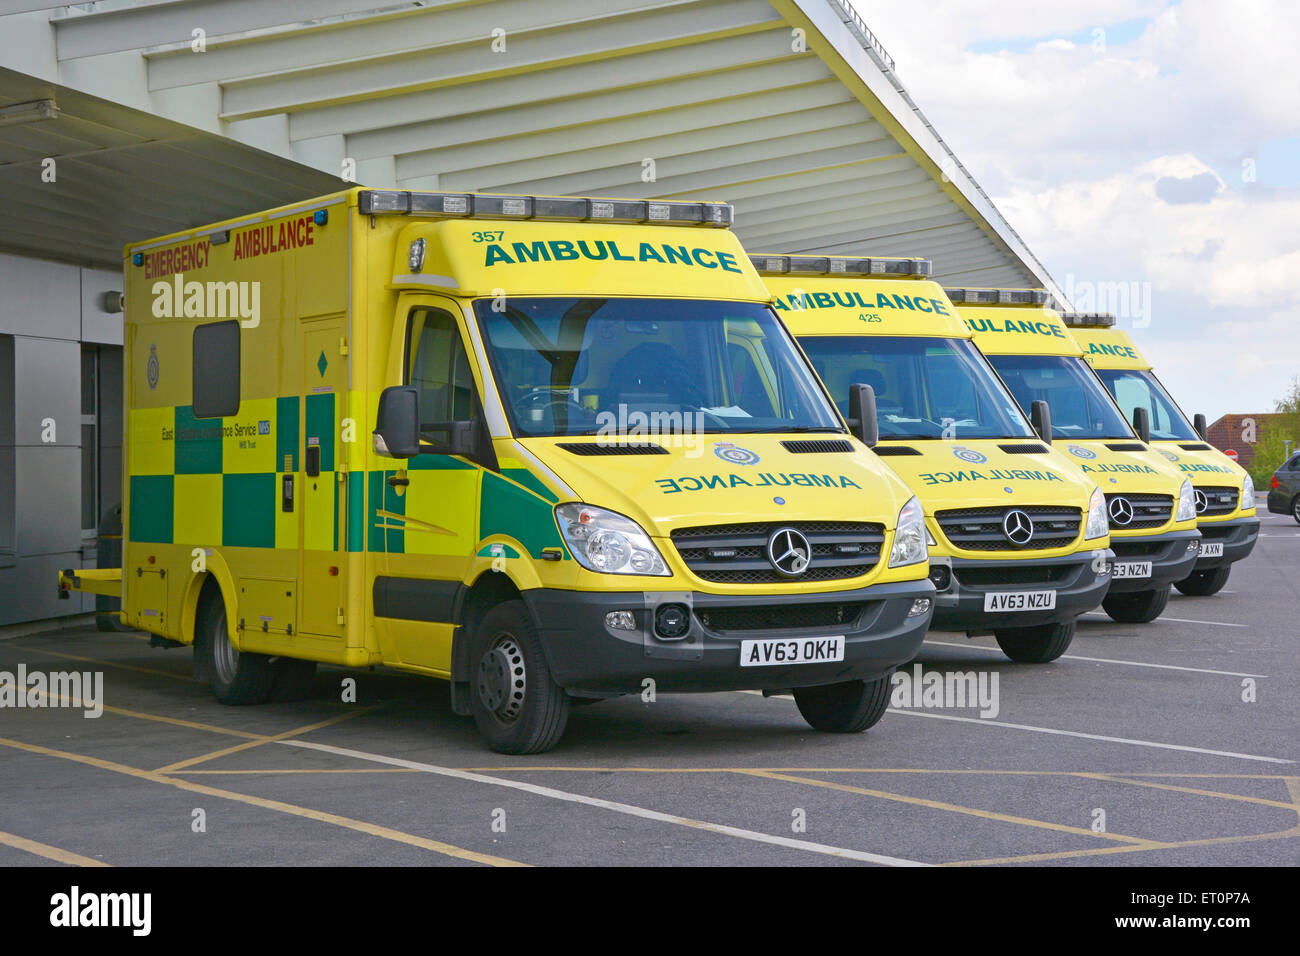 Servicio de ambulancias en el este de Inglaterra Mercedes Benz NHS ambulancias estacionadas fuera del hospital DE ACCIDENTES Y urgencias DE A&E Essex Inglaterra Reino Unido Foto de stock